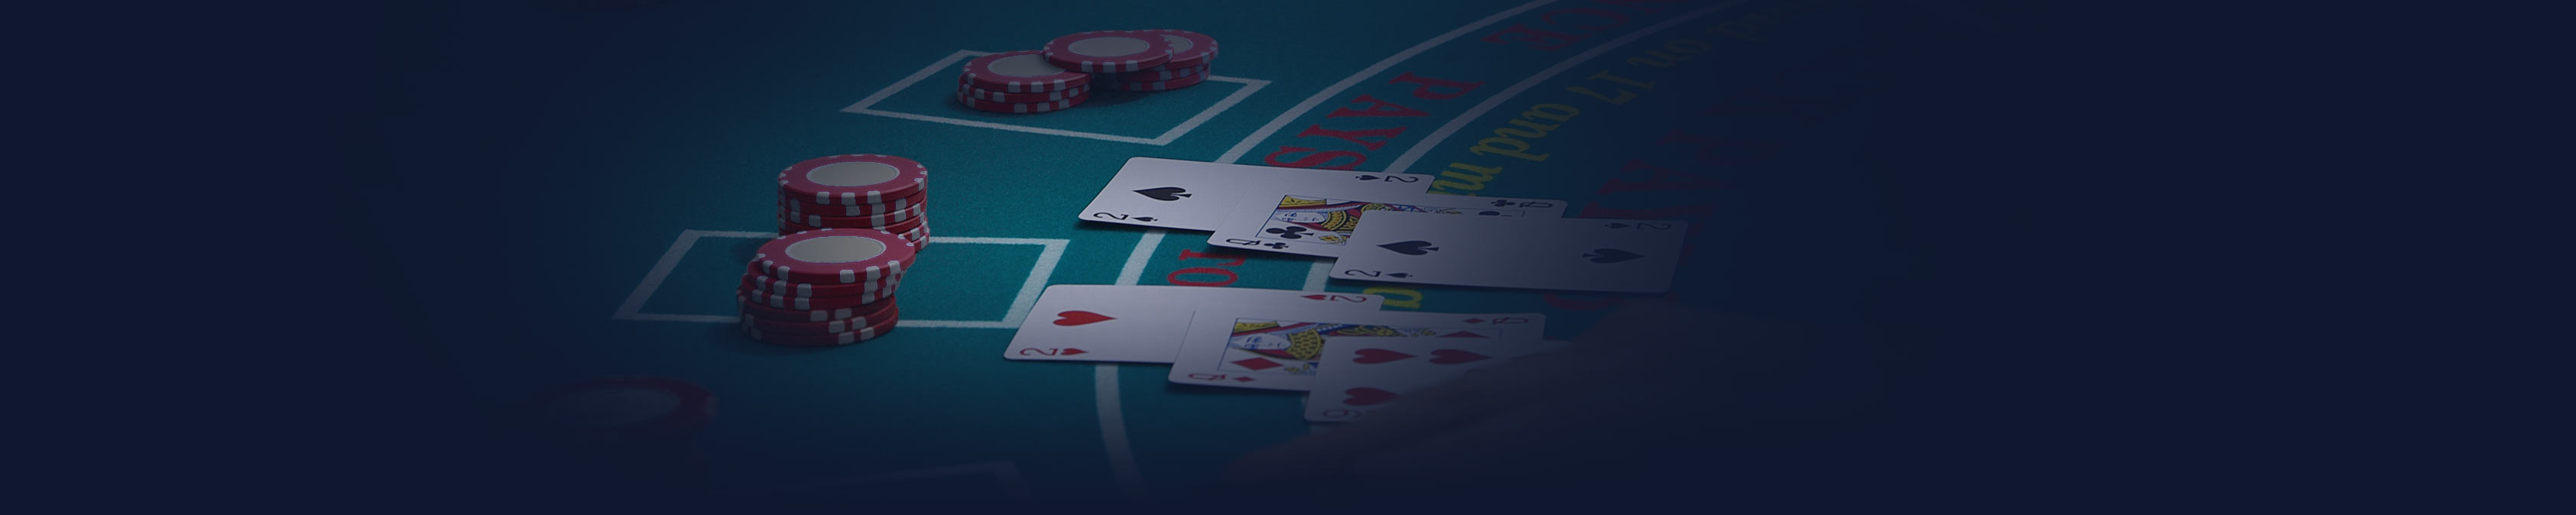 Blackjack casino game casinosearch.eu